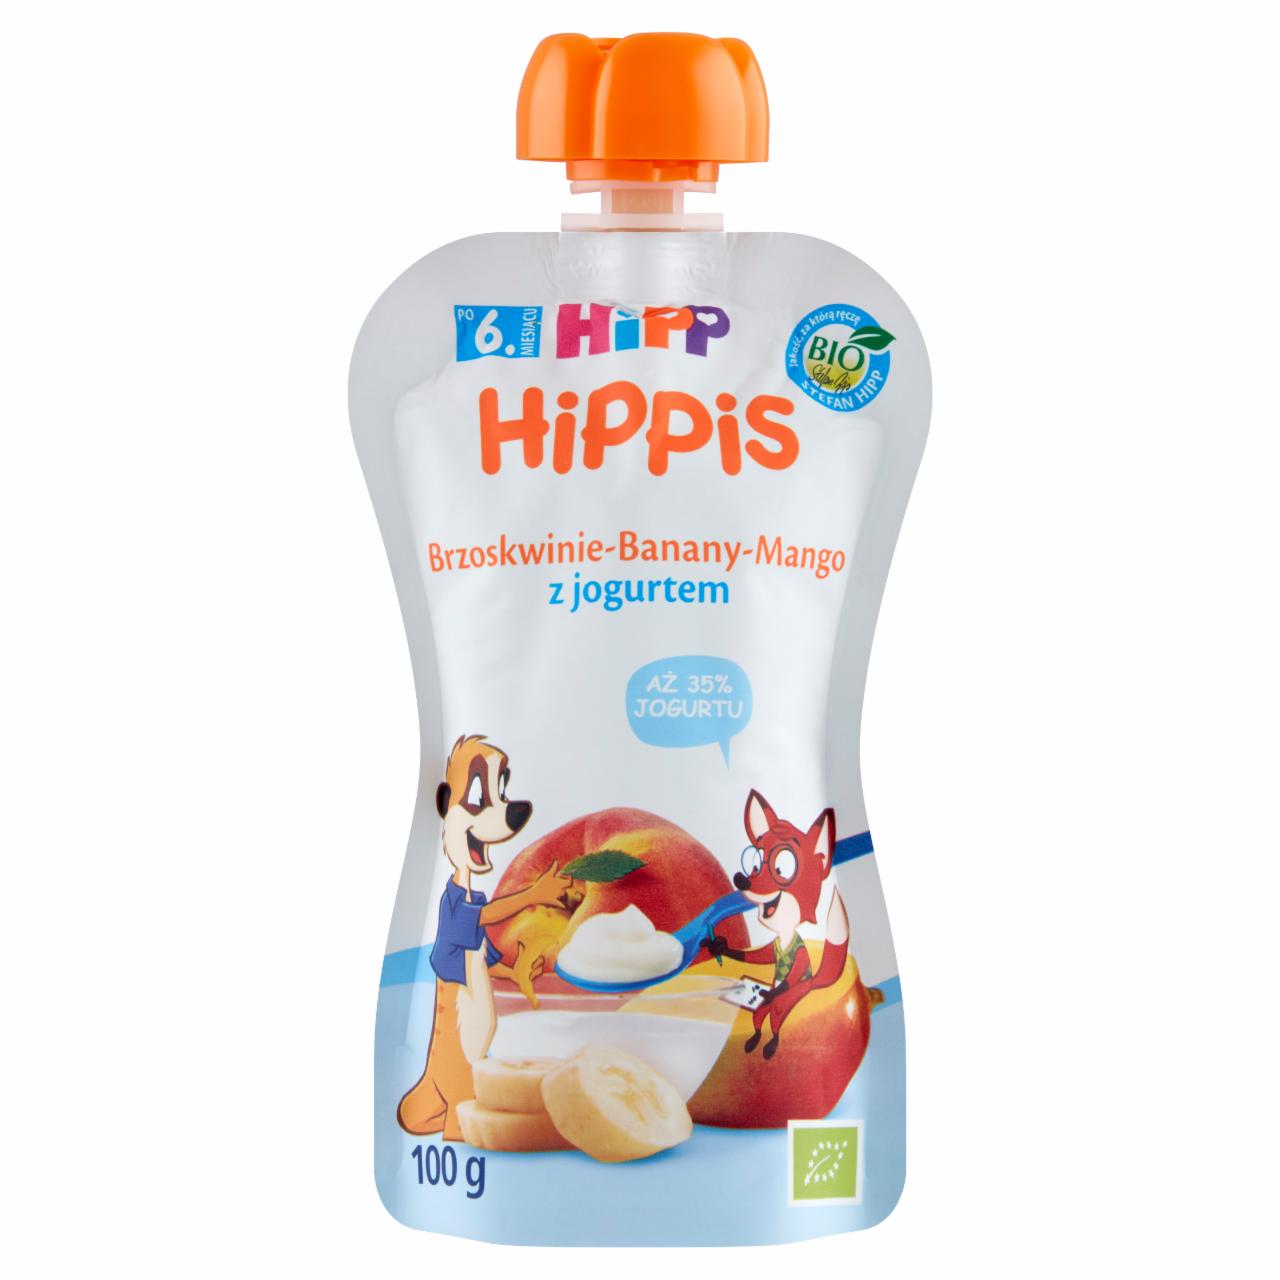 Zdjęcia - HiPP BIO HiPPiS Mus owocowy po 6. miesiącu brzoskwinie-banany-mango z jogurtem 100 g